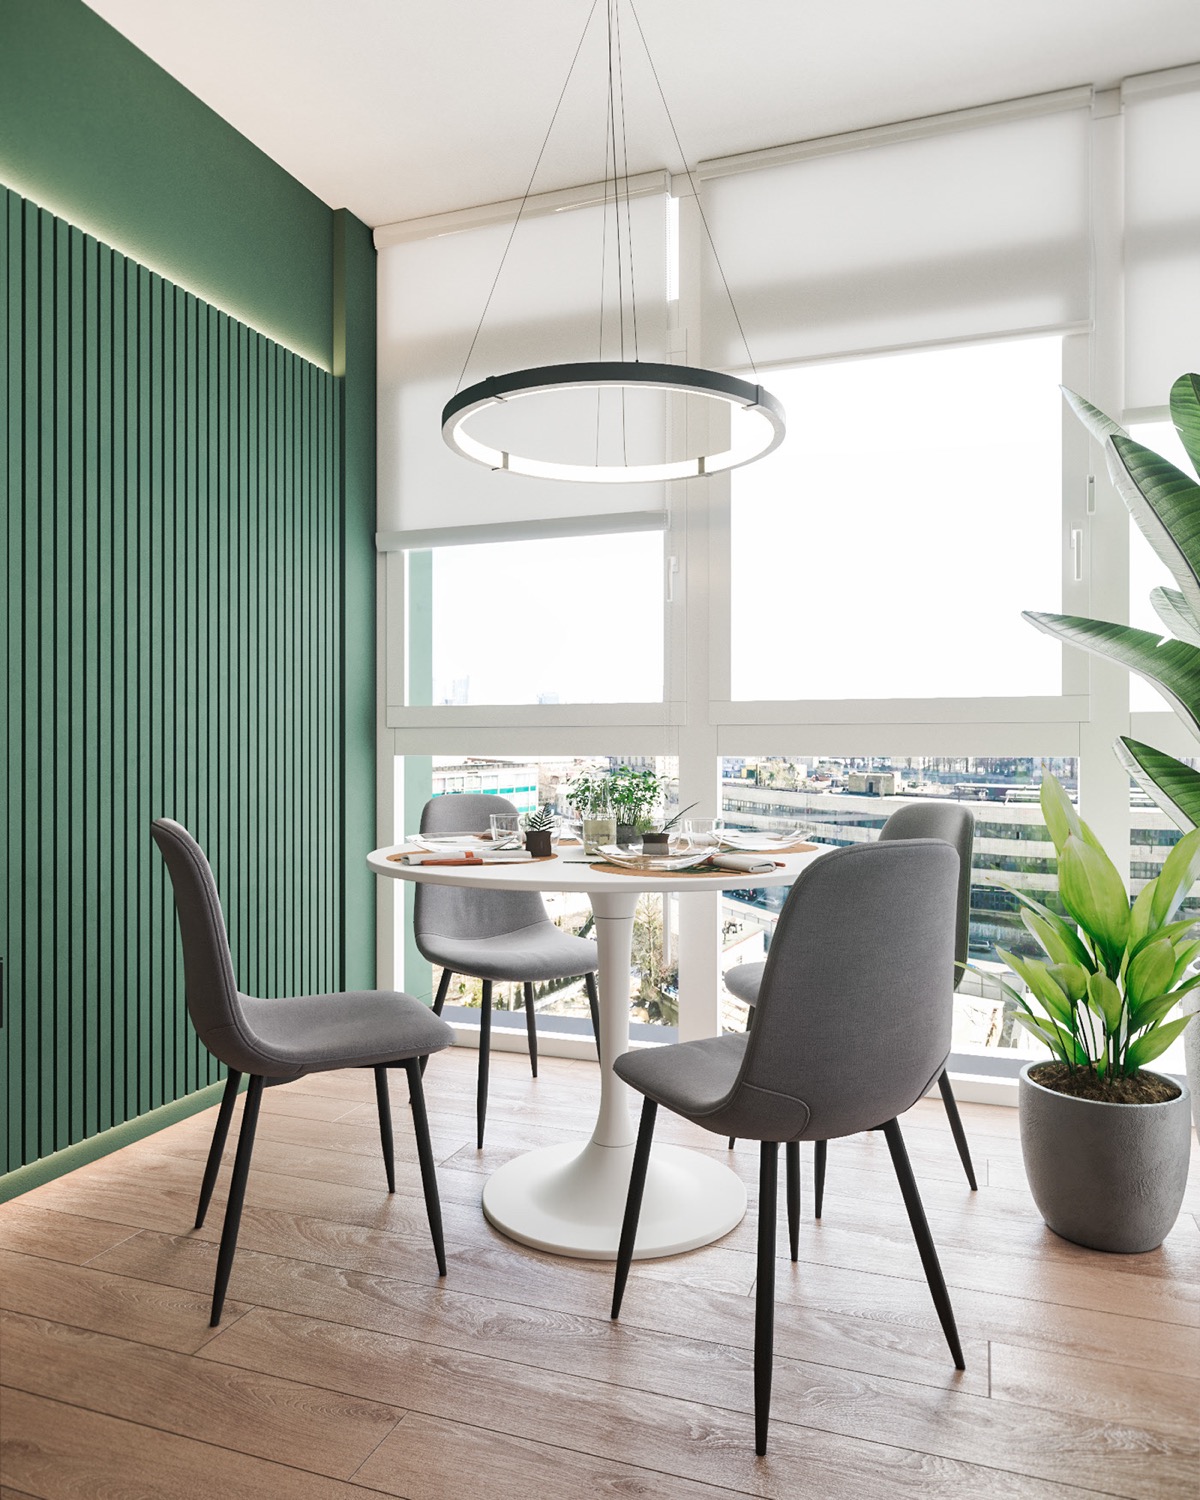 Bức tường sơn màu xanh lá kéo dài tới khu vực ăn uống trong căn hộ 90m2. Đèn thả hiện đại với hình dáng tương tự đường viền của bàn ăn tròn bên dưới.